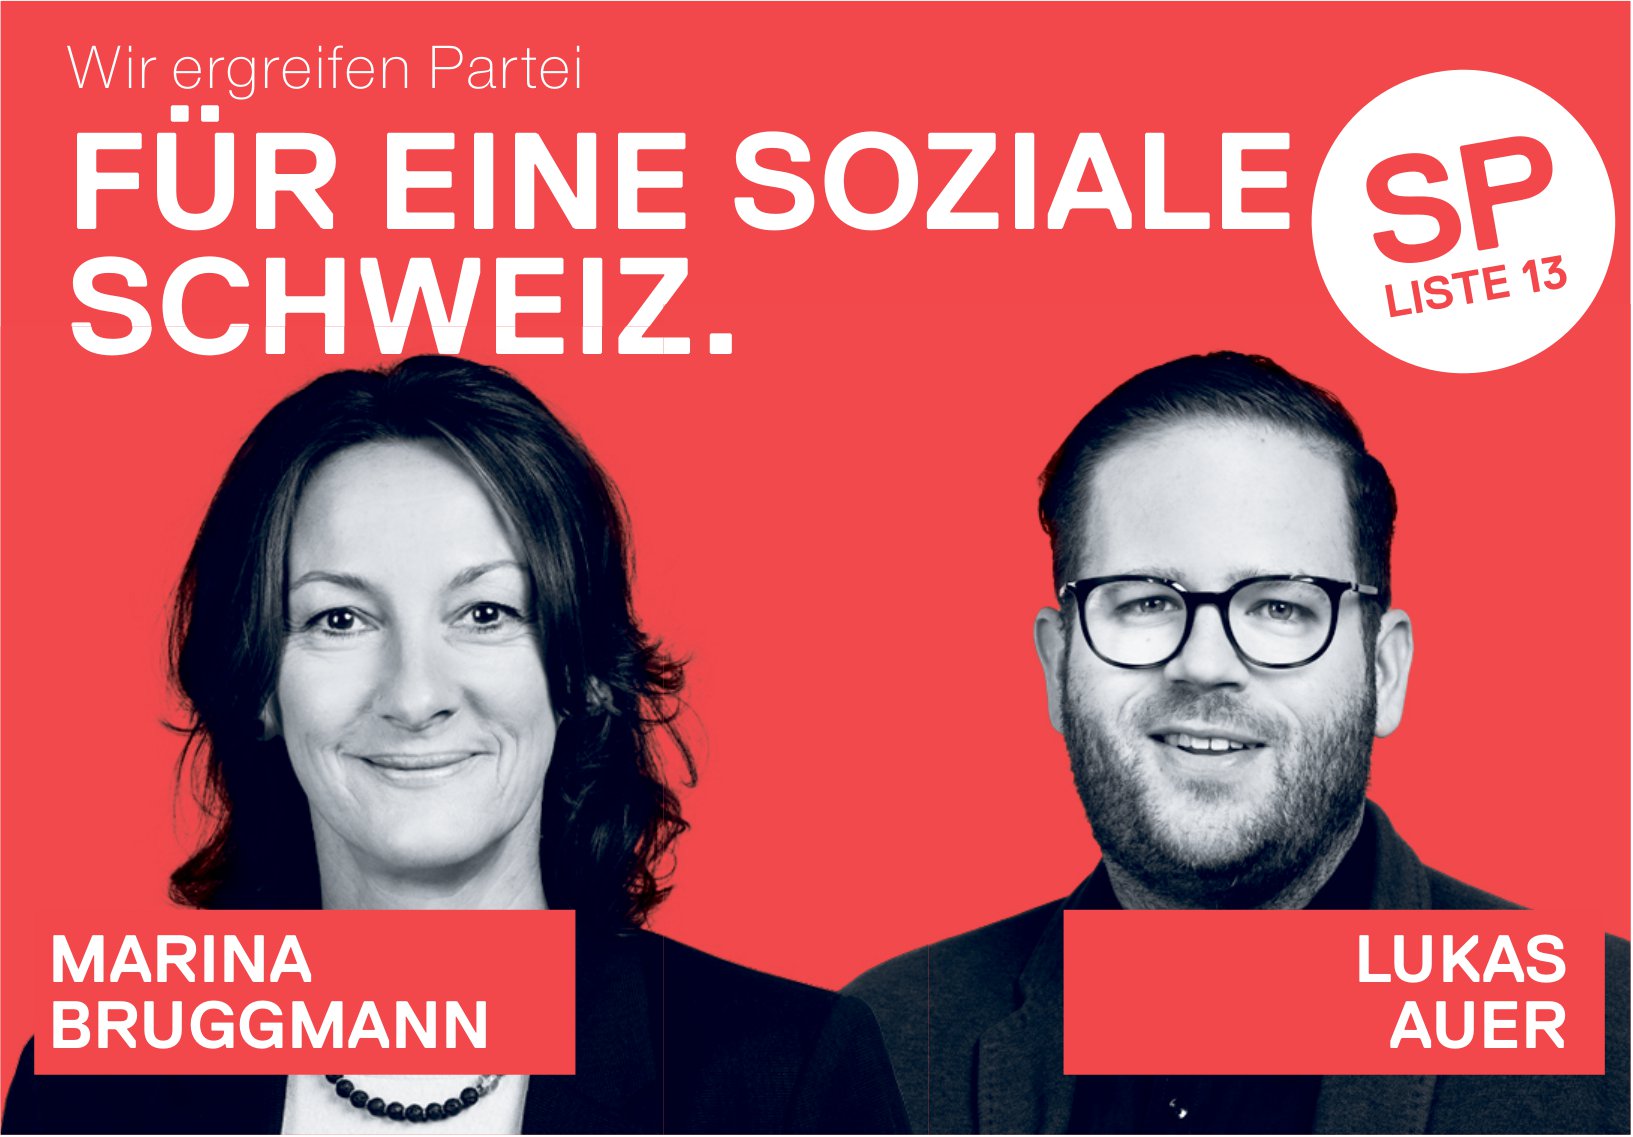 Wir ergreifen Partei für eine soziale Schweiz.